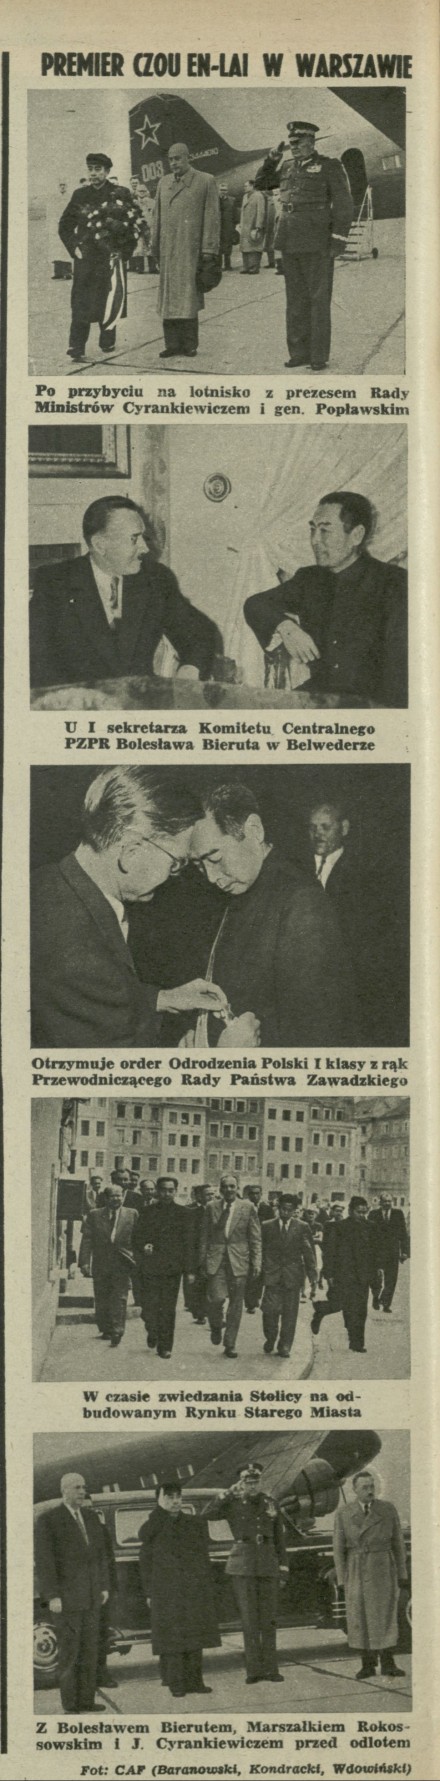 Premier Czou En-Lai w Warszawie